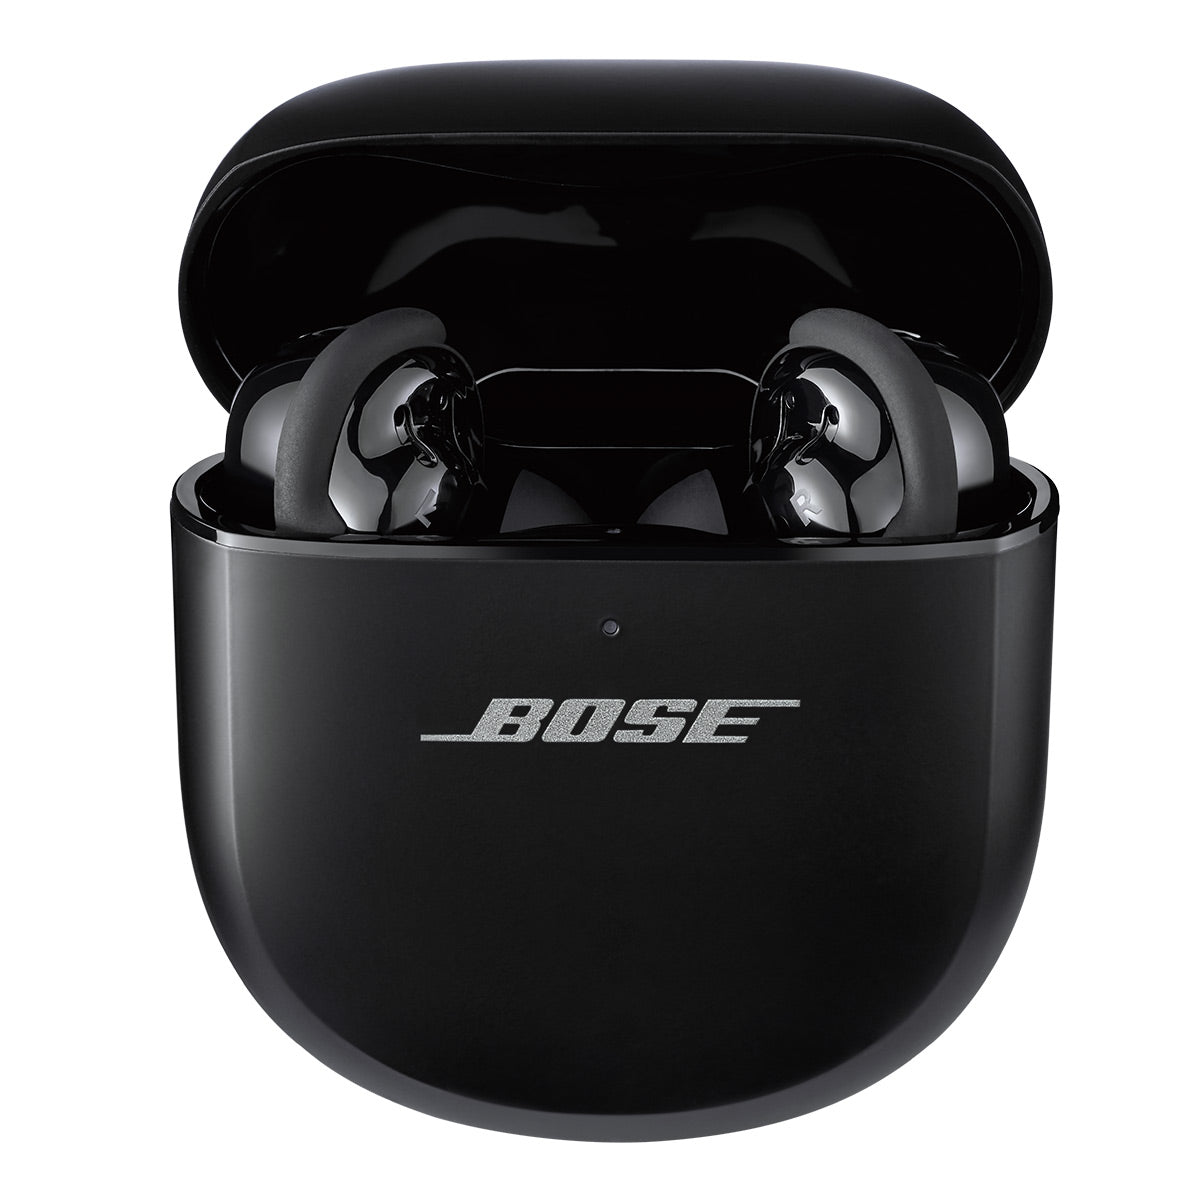 Dampen the Din: Bose Noise Cancelling Headphones 700 vs. QuietComfort 35 II